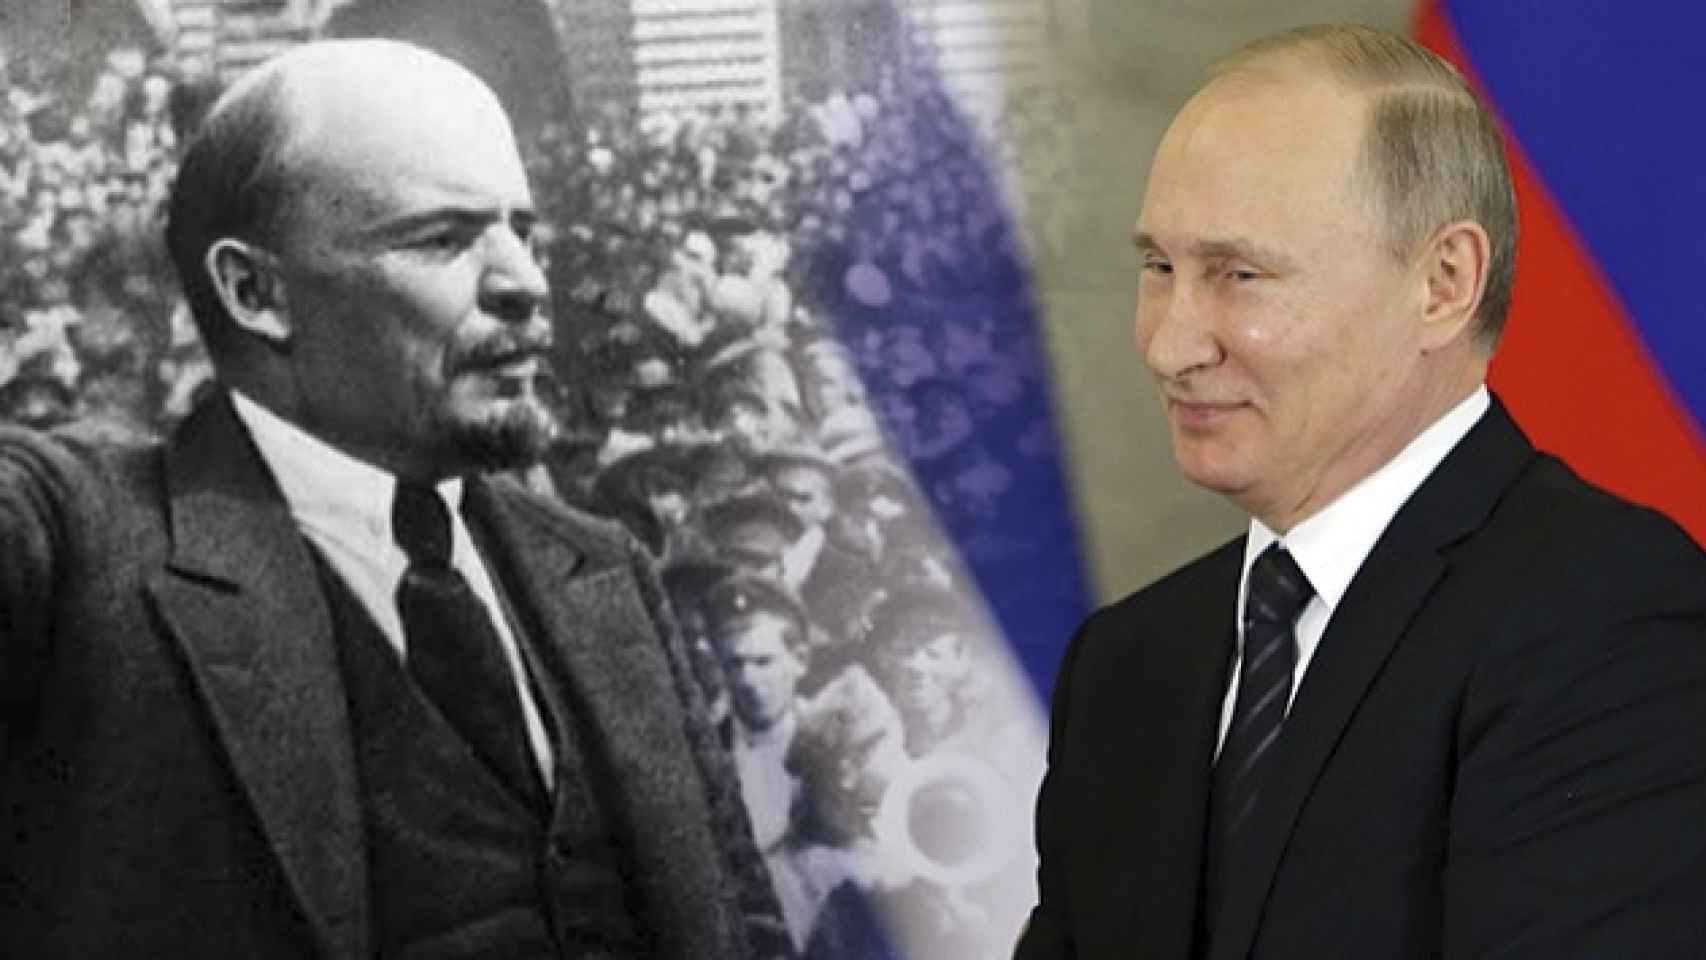 Lenin y Putin en un fotomontaje.